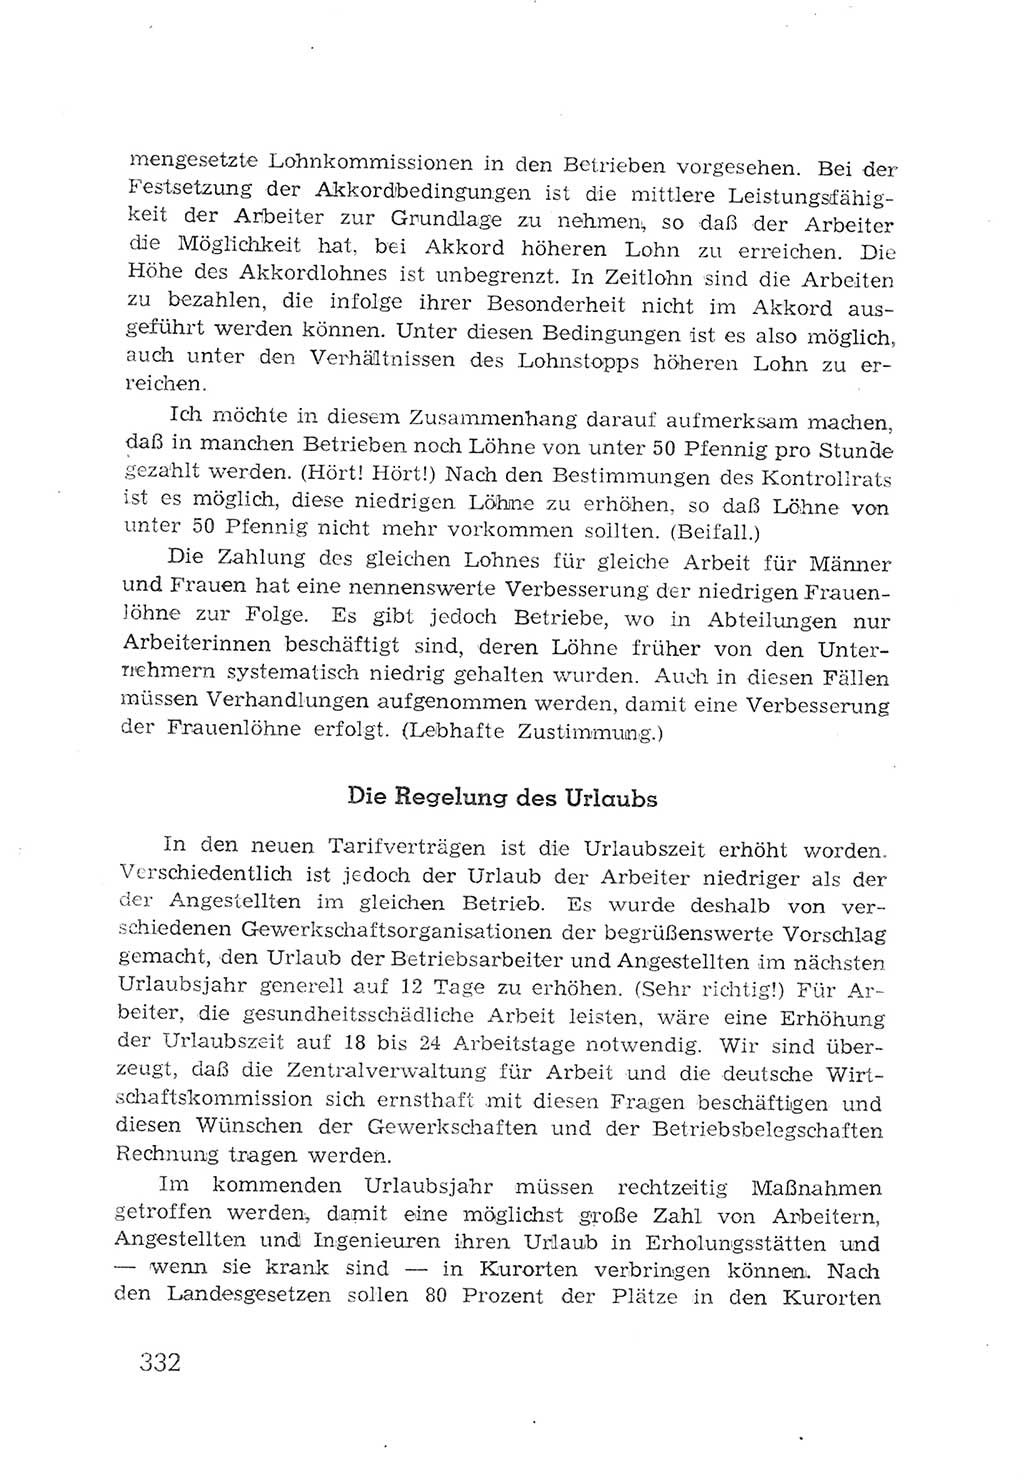 Protokoll der Verhandlungen des 2. Parteitages der Sozialistischen Einheitspartei Deutschlands (SED) [Sowjetische Besatzungszone (SBZ) Deutschlands] 1947, Seite 332 (Prot. Verh. 2. PT SED SBZ Dtl. 1947, S. 332)